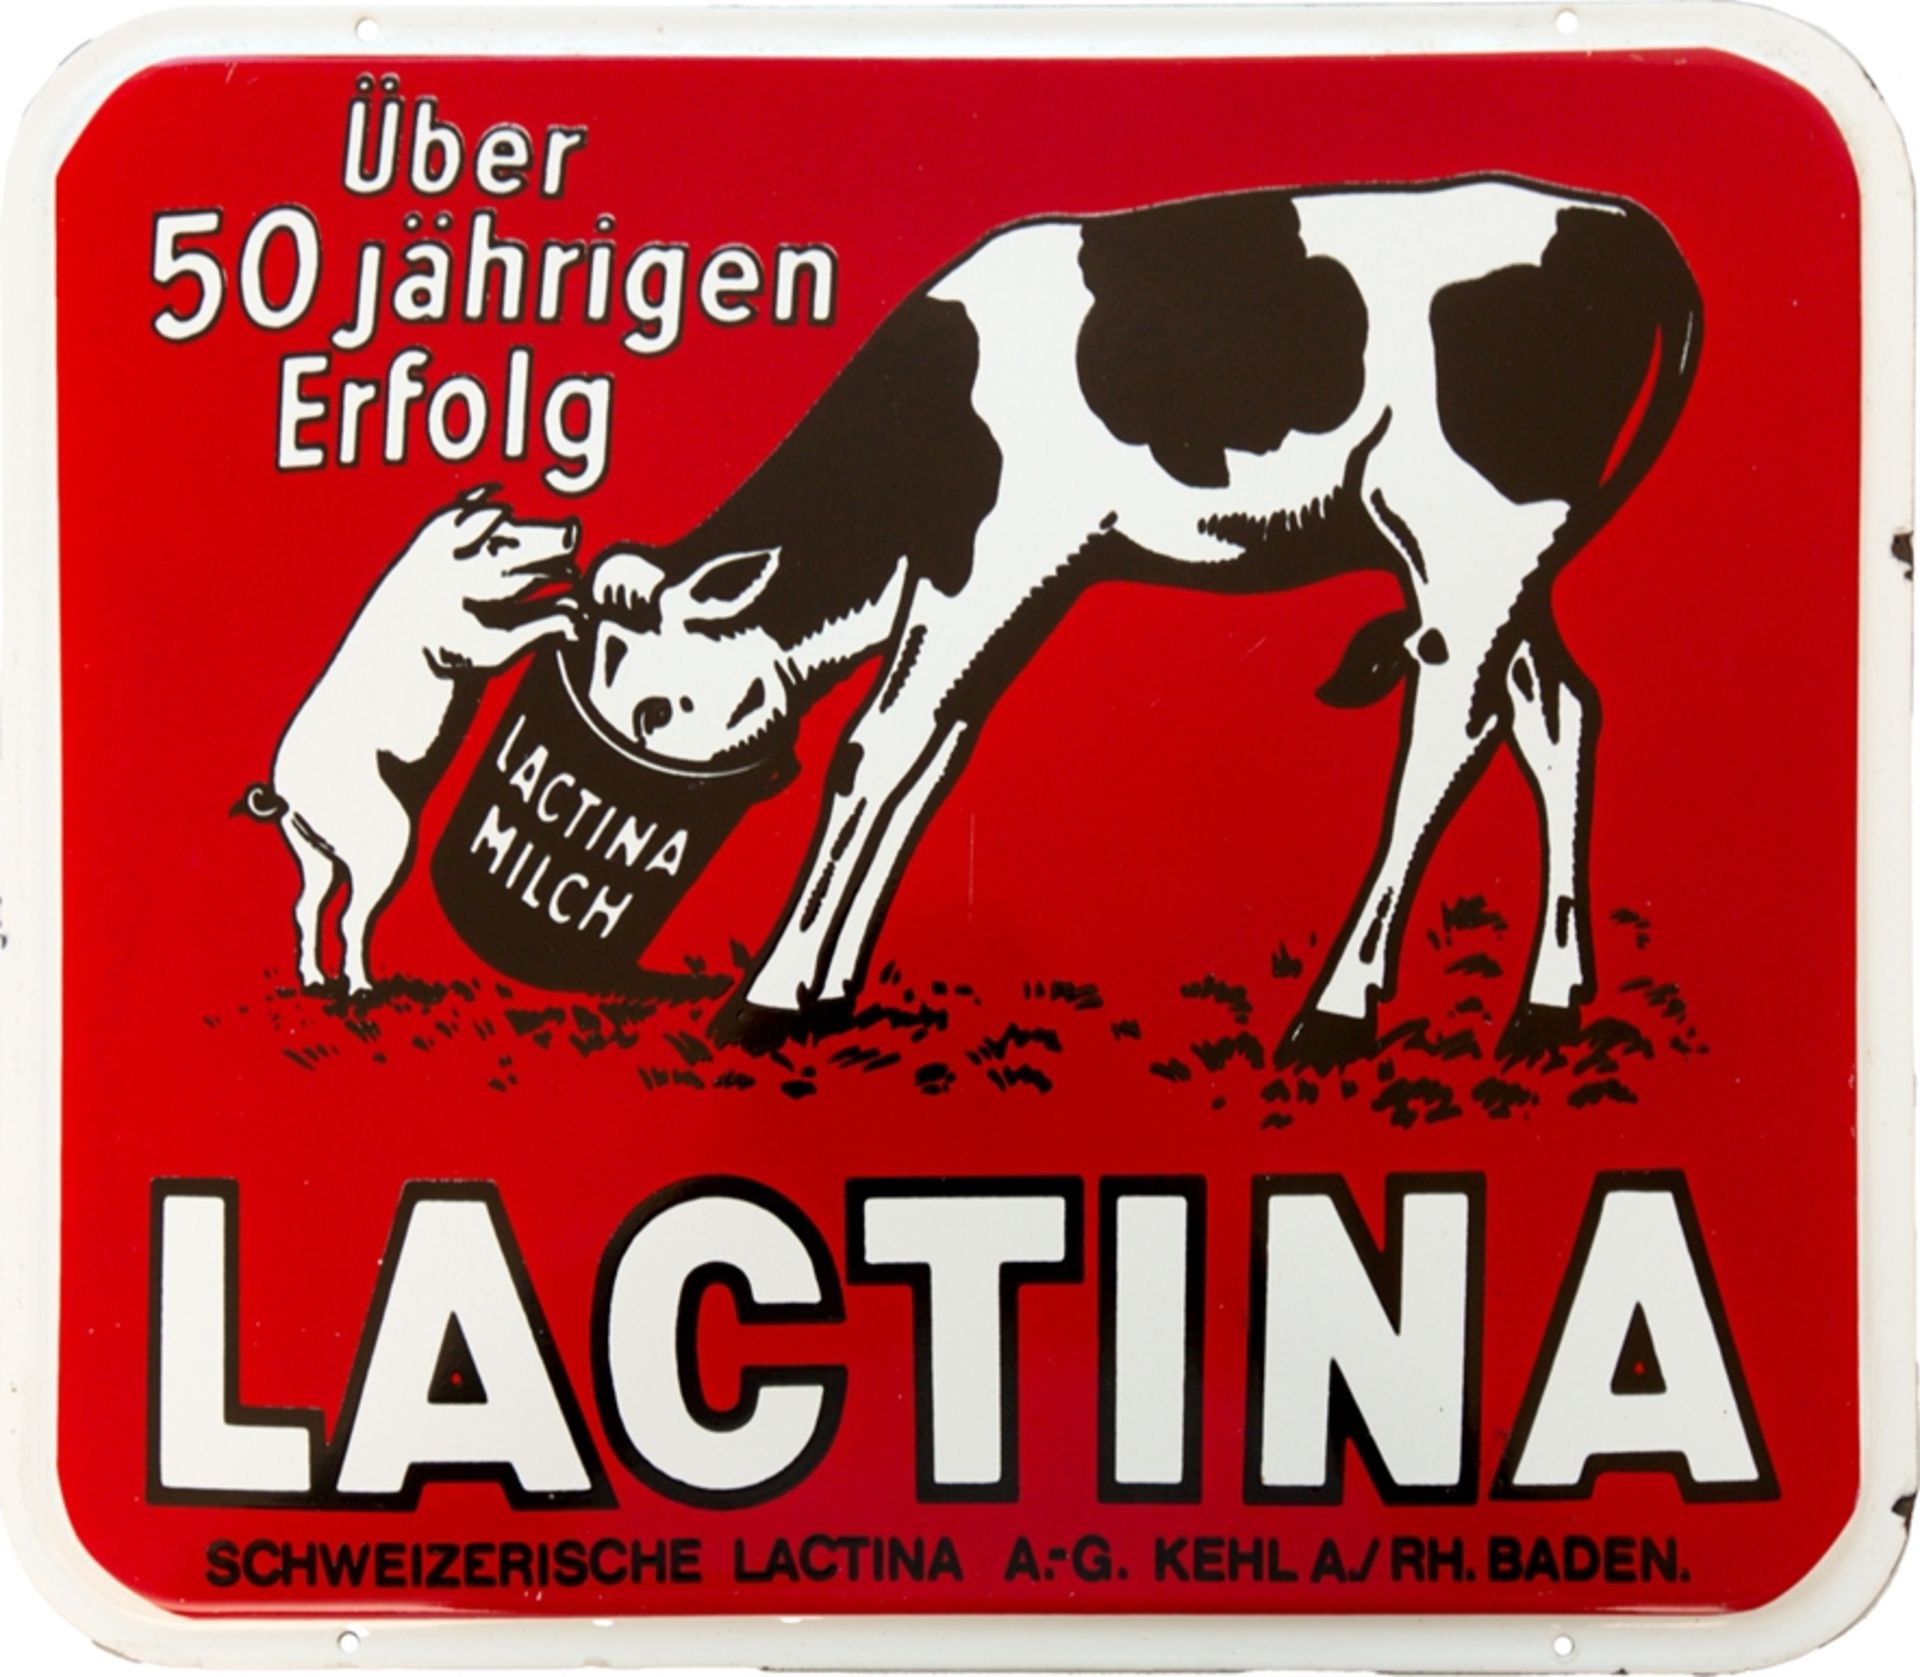 Enamel sign Lactina Switzerland and Kehl am Rhein/Baden, around 1950